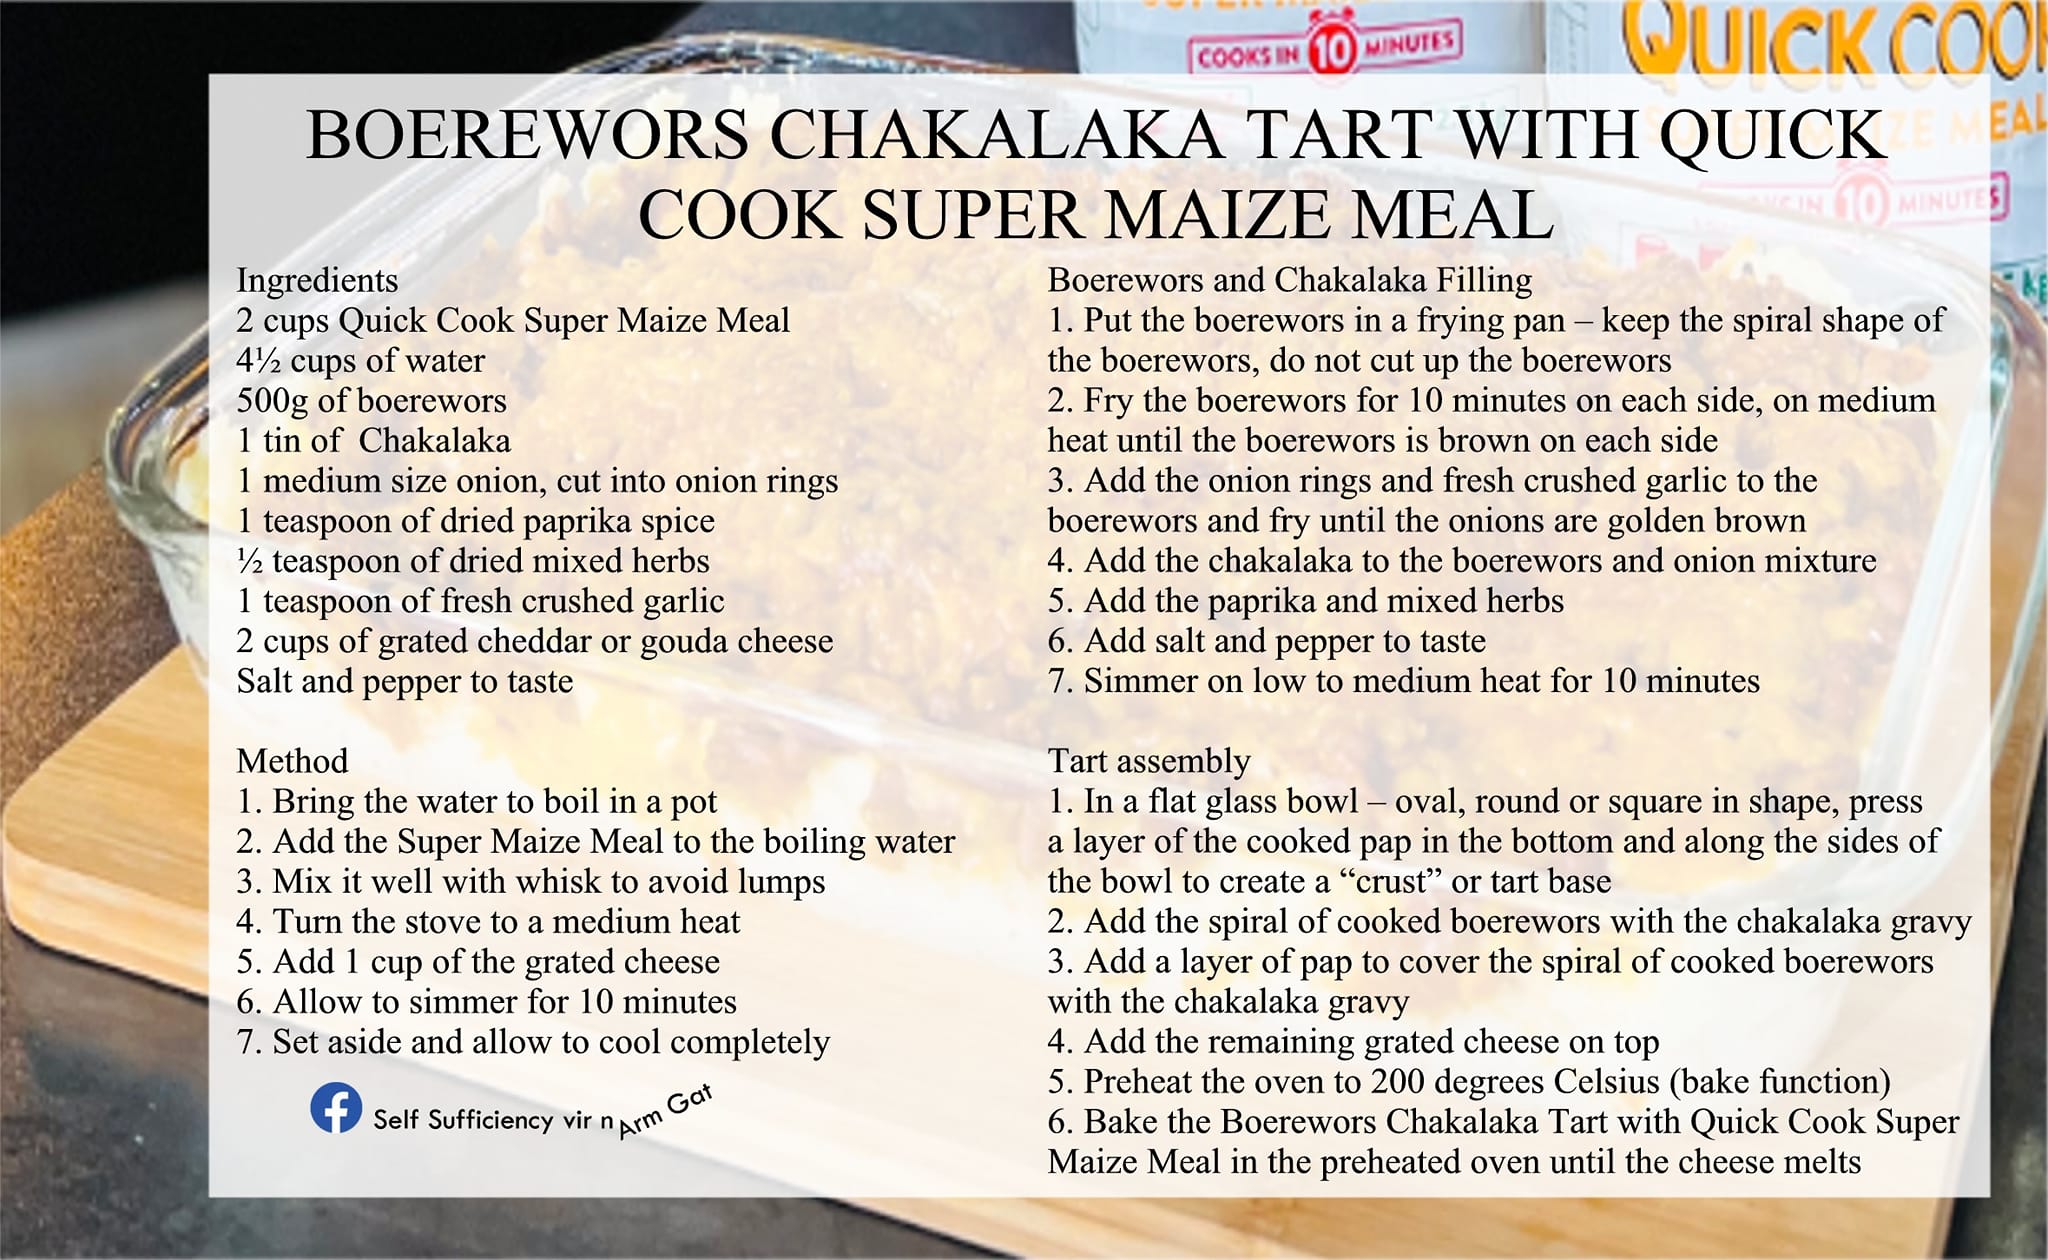 Boerewors Chakalaka Tart with Quick Cook Super Maize Meal